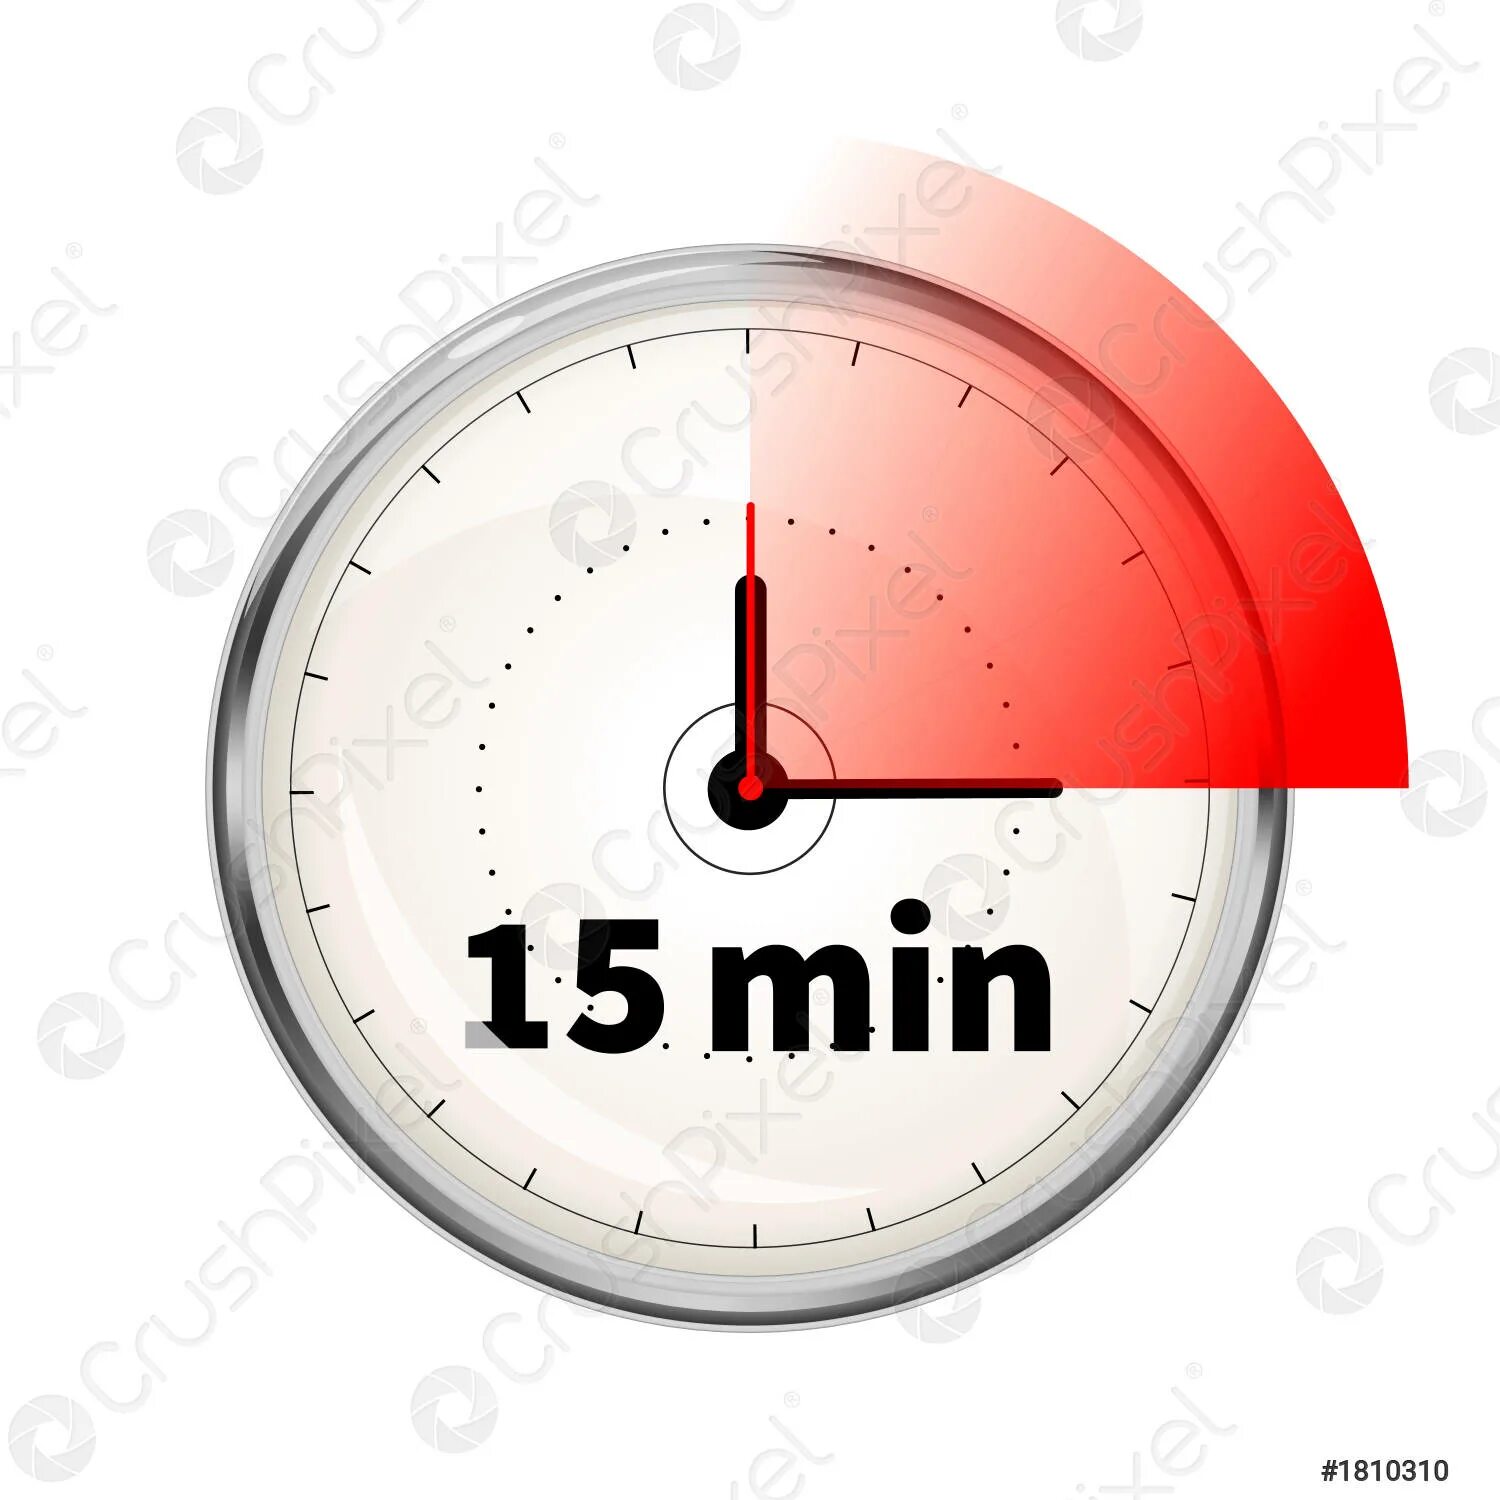 Таймер час 15 минут. Часы 15 минут. Таймер 15 мин. Часы таймер на 15 минут. Осталось 15 минут.